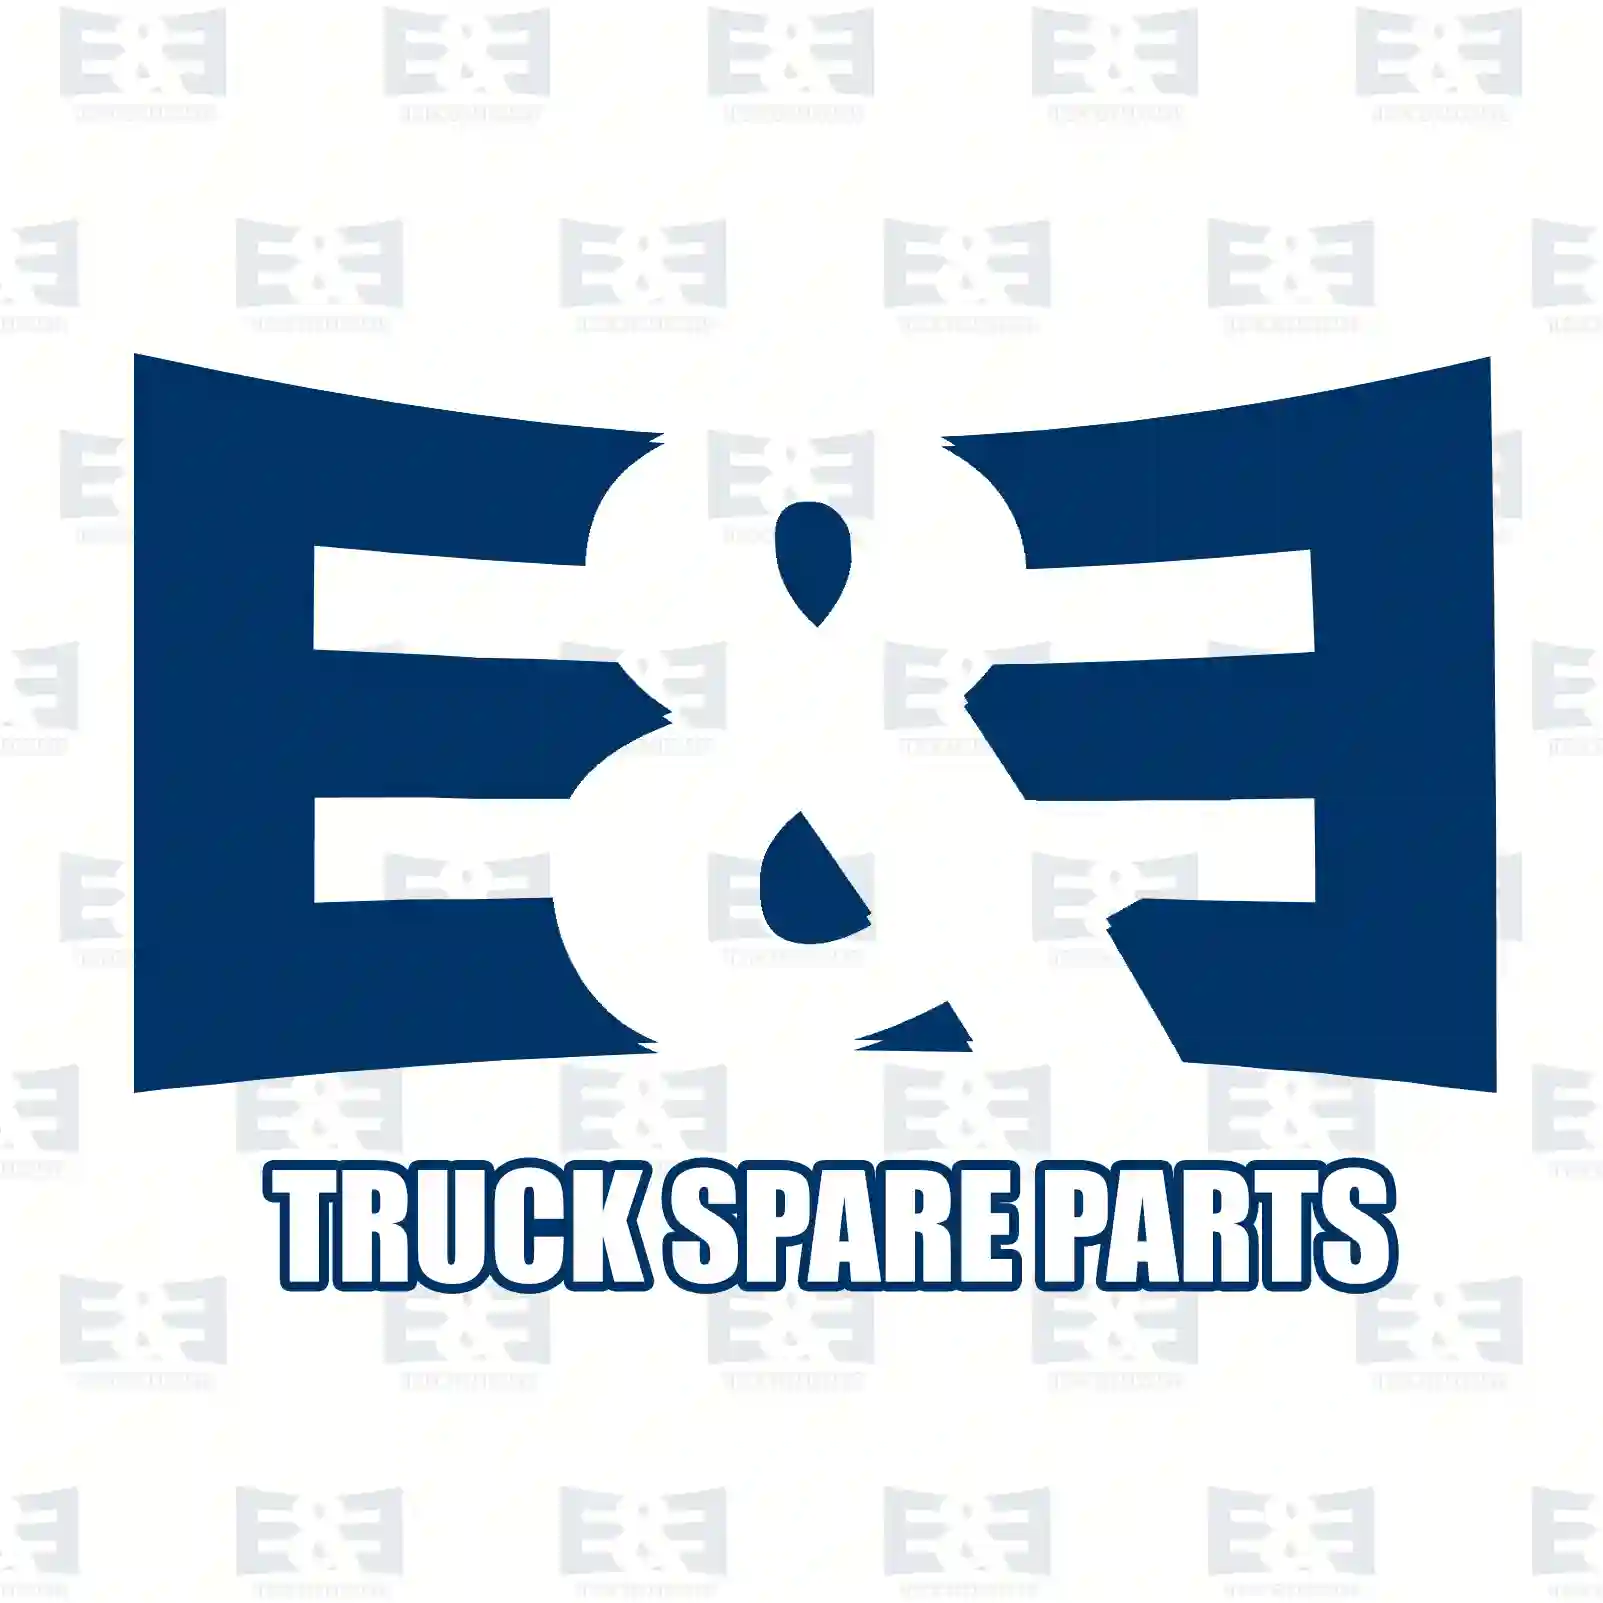 Cap, expansion tank, 2E2203300, 8200048024, 91166192, 4155010015, MR161523, 21430-AX300, 21430-AX30A, 21430-AX600, 21712-90J00, 4408066, 7700805131, 8200048024, 8200244498, 17931-84A00 ||  2E2203300 E&E Truck Spare Parts | Truck Spare Parts, Auotomotive Spare Parts Cap, expansion tank, 2E2203300, 8200048024, 91166192, 4155010015, MR161523, 21430-AX300, 21430-AX30A, 21430-AX600, 21712-90J00, 4408066, 7700805131, 8200048024, 8200244498, 17931-84A00 ||  2E2203300 E&E Truck Spare Parts | Truck Spare Parts, Auotomotive Spare Parts